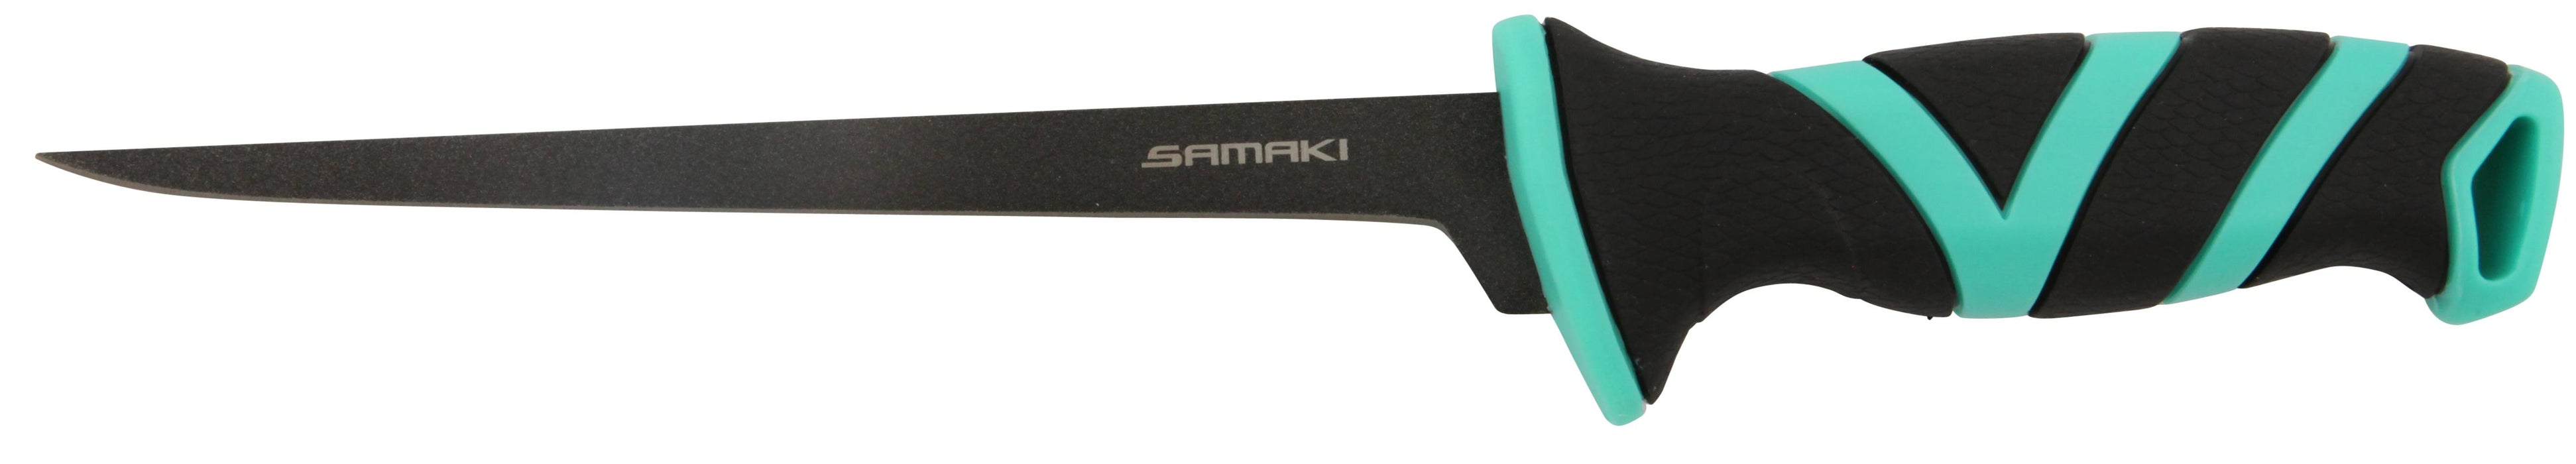 Samaki Stainless Steel Fillet Knifes